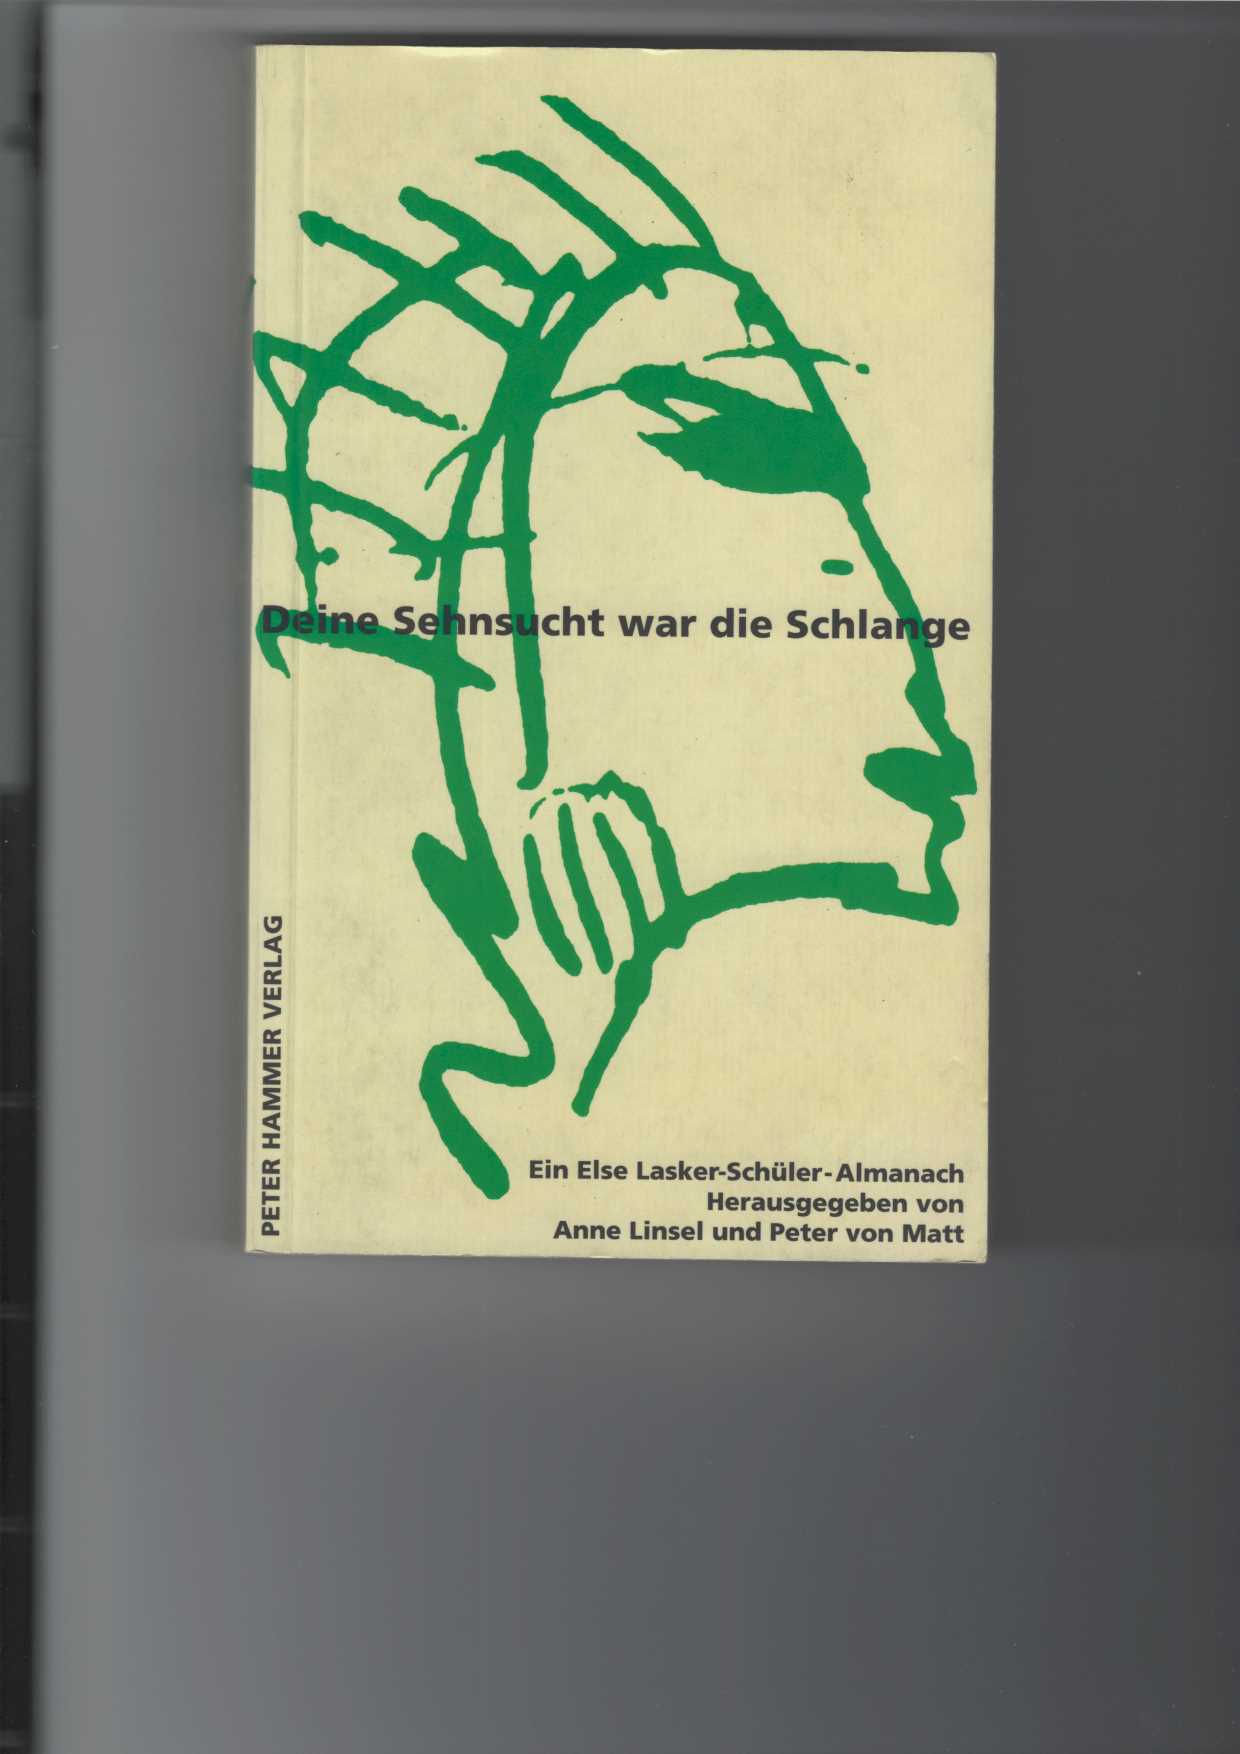 Deine Sehnsucht war die Schlange. Else Lasker-Schüler-Almanach; dritter (3.) Band. Herausgegeben von Anne Linsel und Peter von Matt. Mit Abbildungen. - Linsel (Hrsg.), Anne und Peter von Matt (Hrsg.)